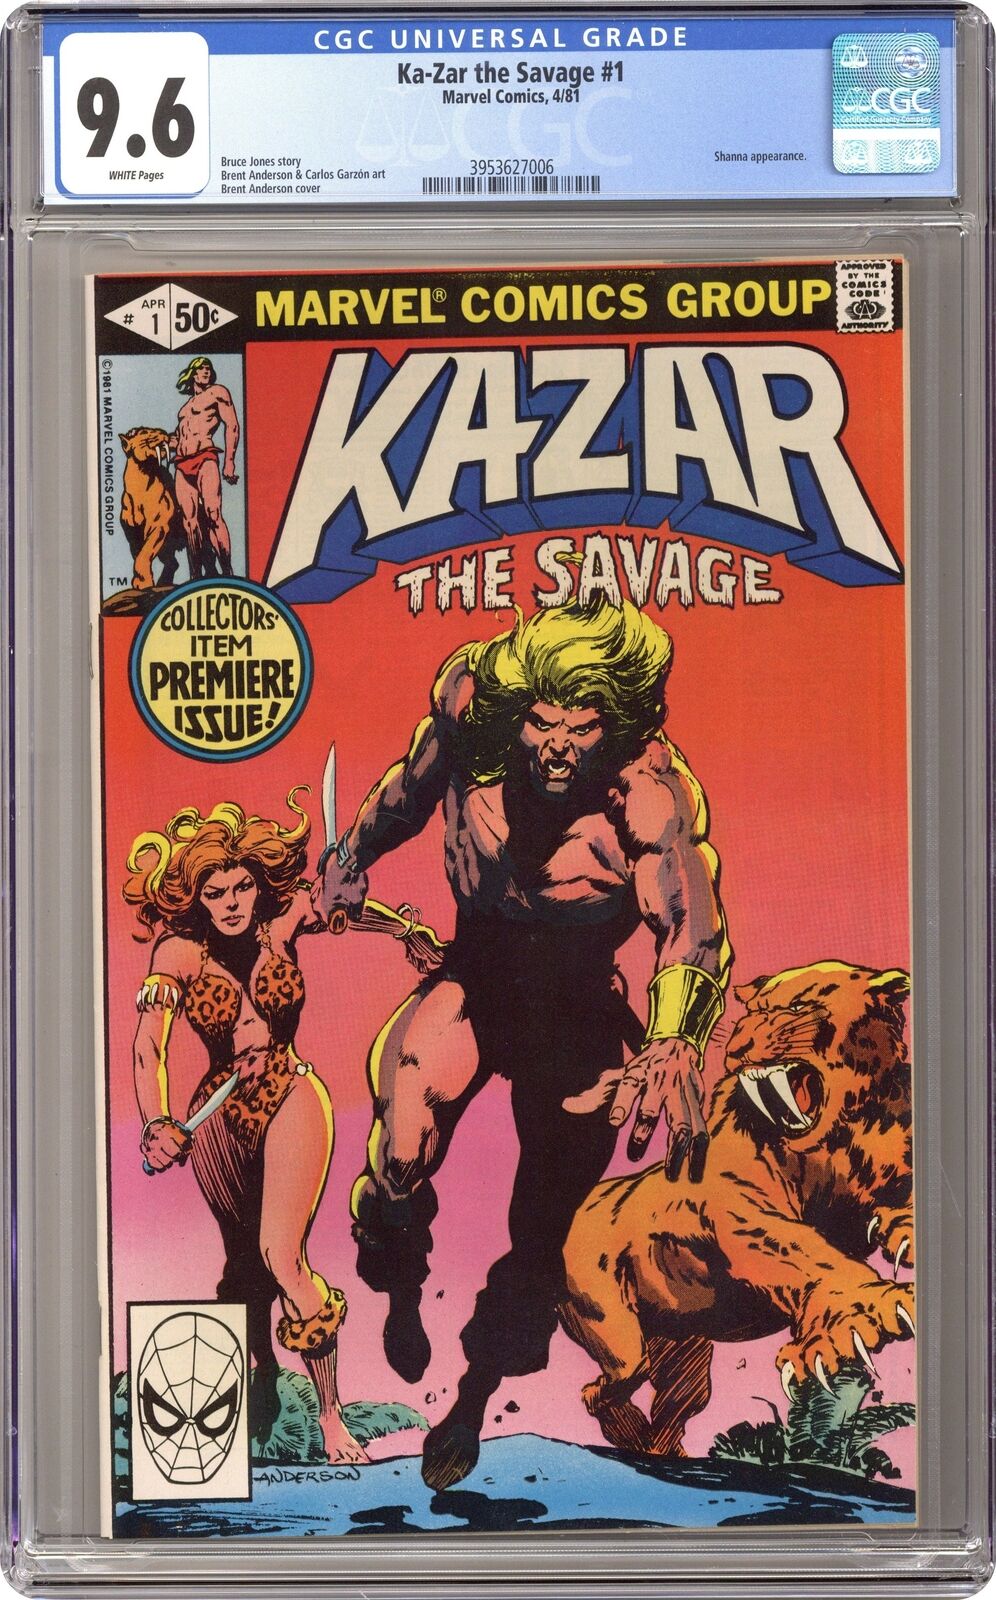 Ka-Zar the Savage #1 CGC 9.6 1981 3953627006